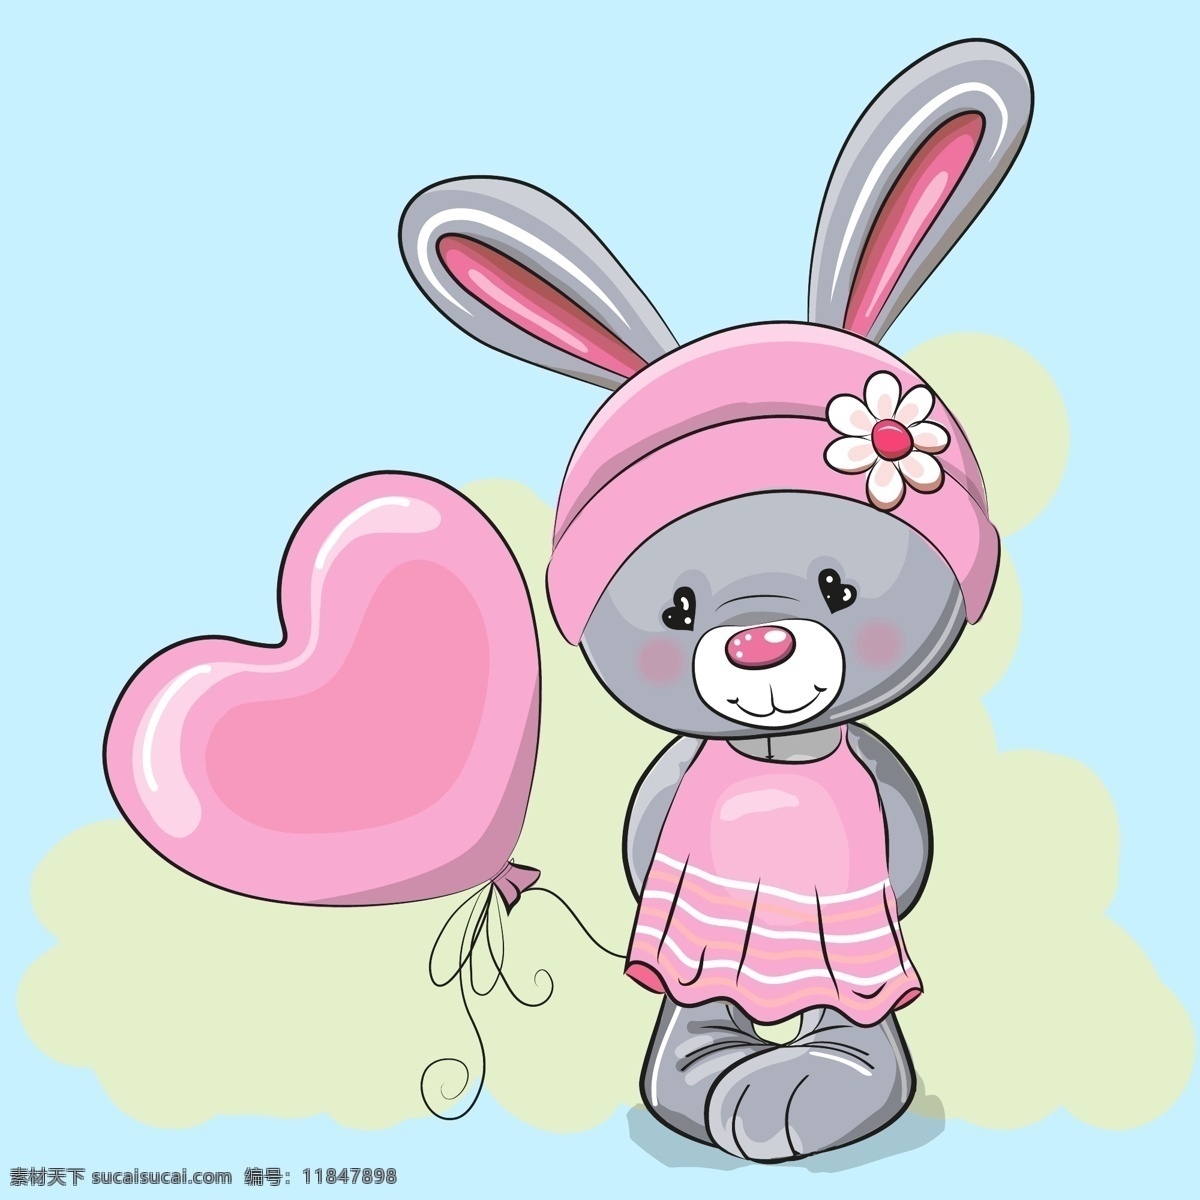 卡通 兔子 矢量 可爱 粉色 气球 矢量素材 设计素材